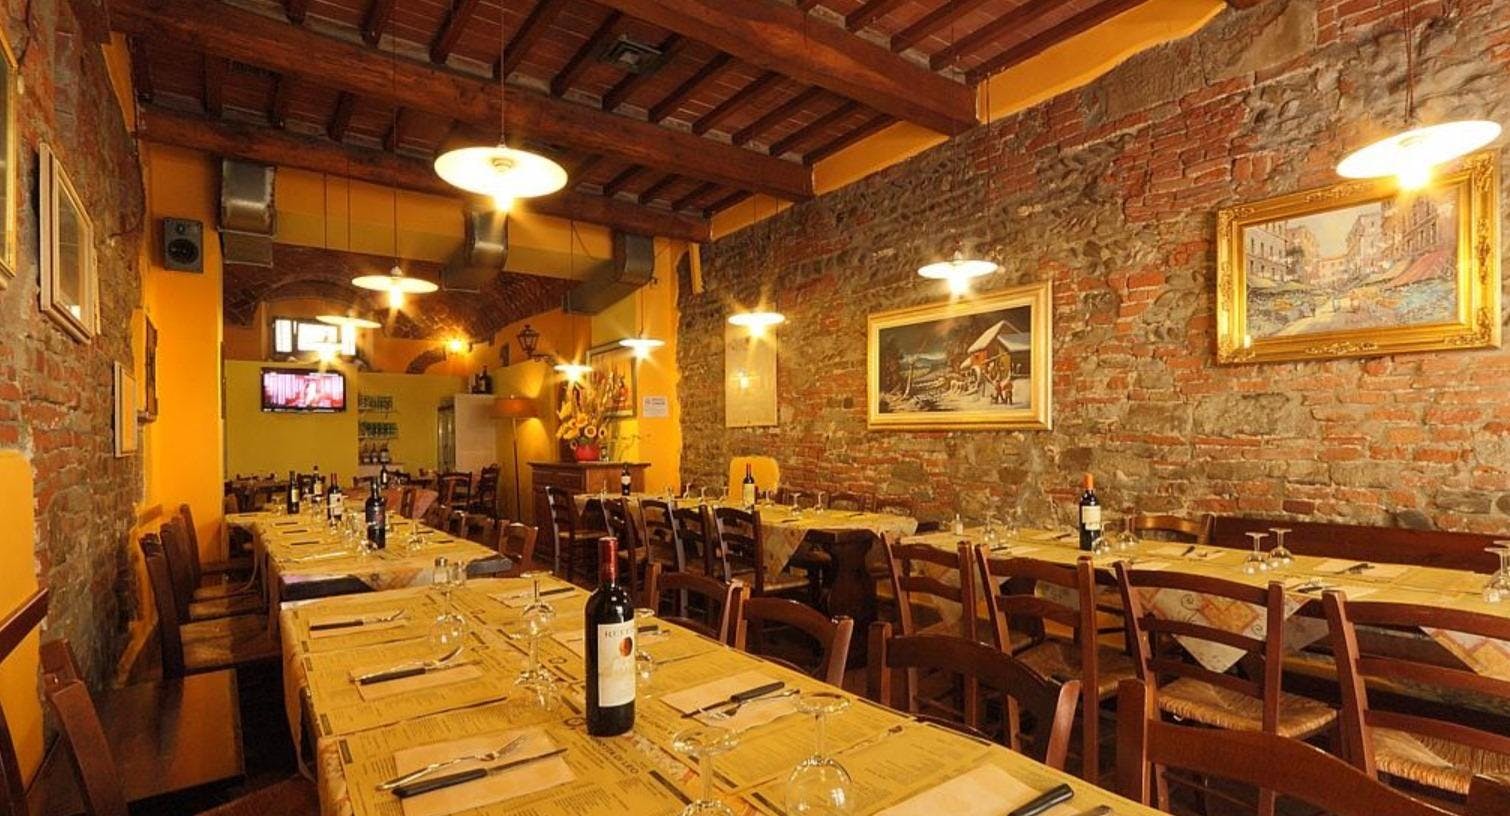 Photo of restaurant La Grotta Di Leo in Centro storico, Florence